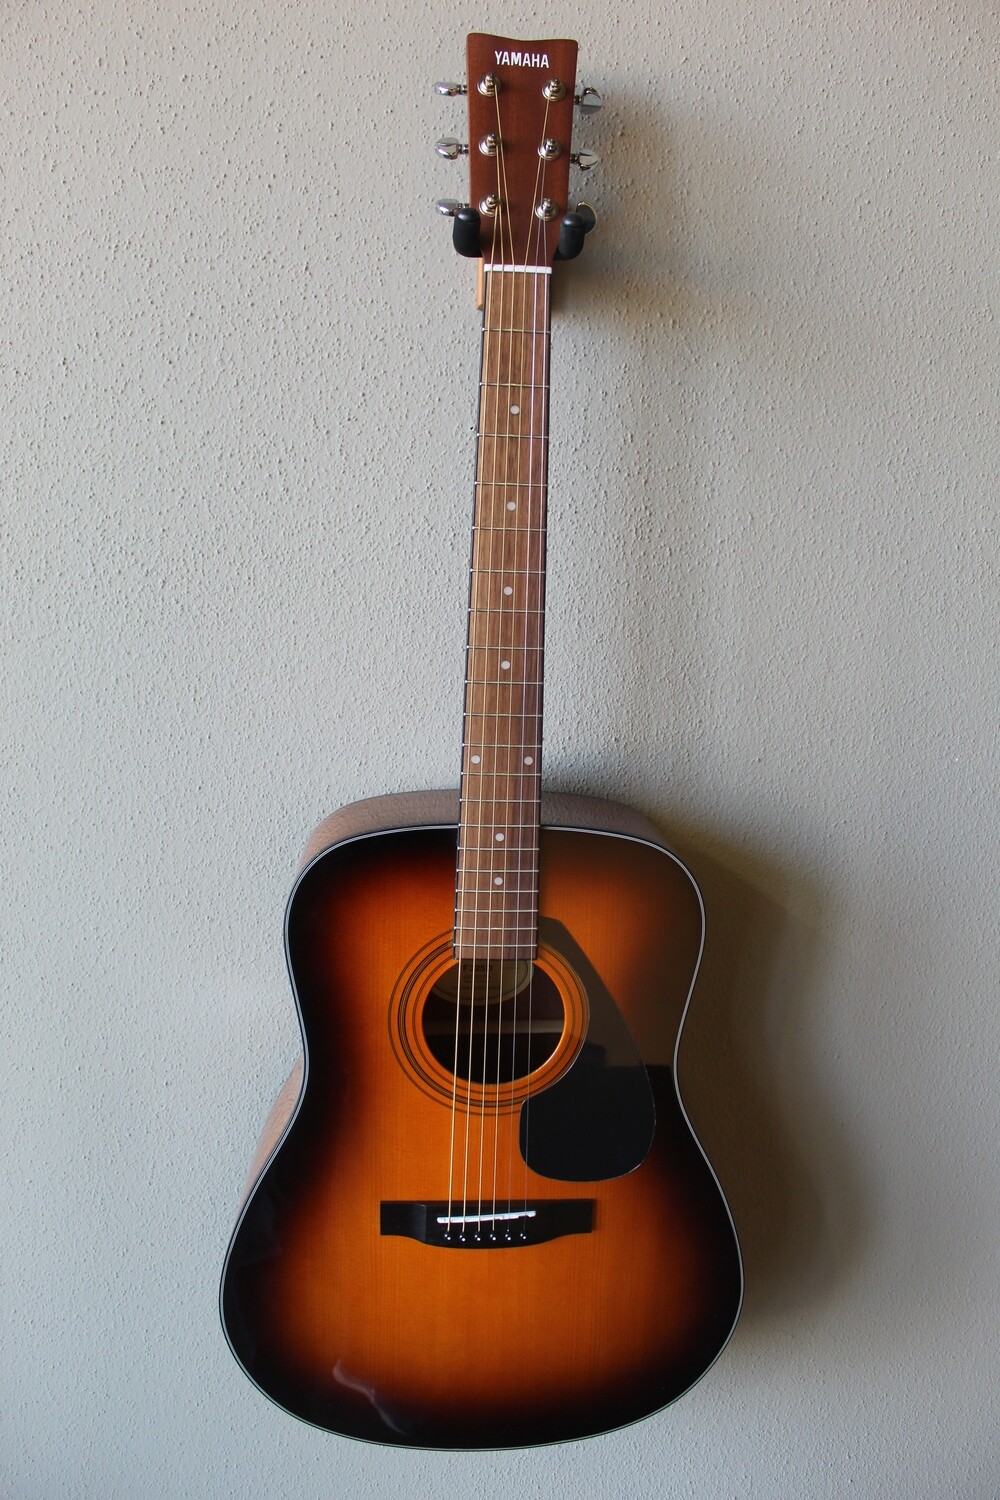 Yamaha F325D Steel String Acoustic Guitar with Gig Bag - Sunburst